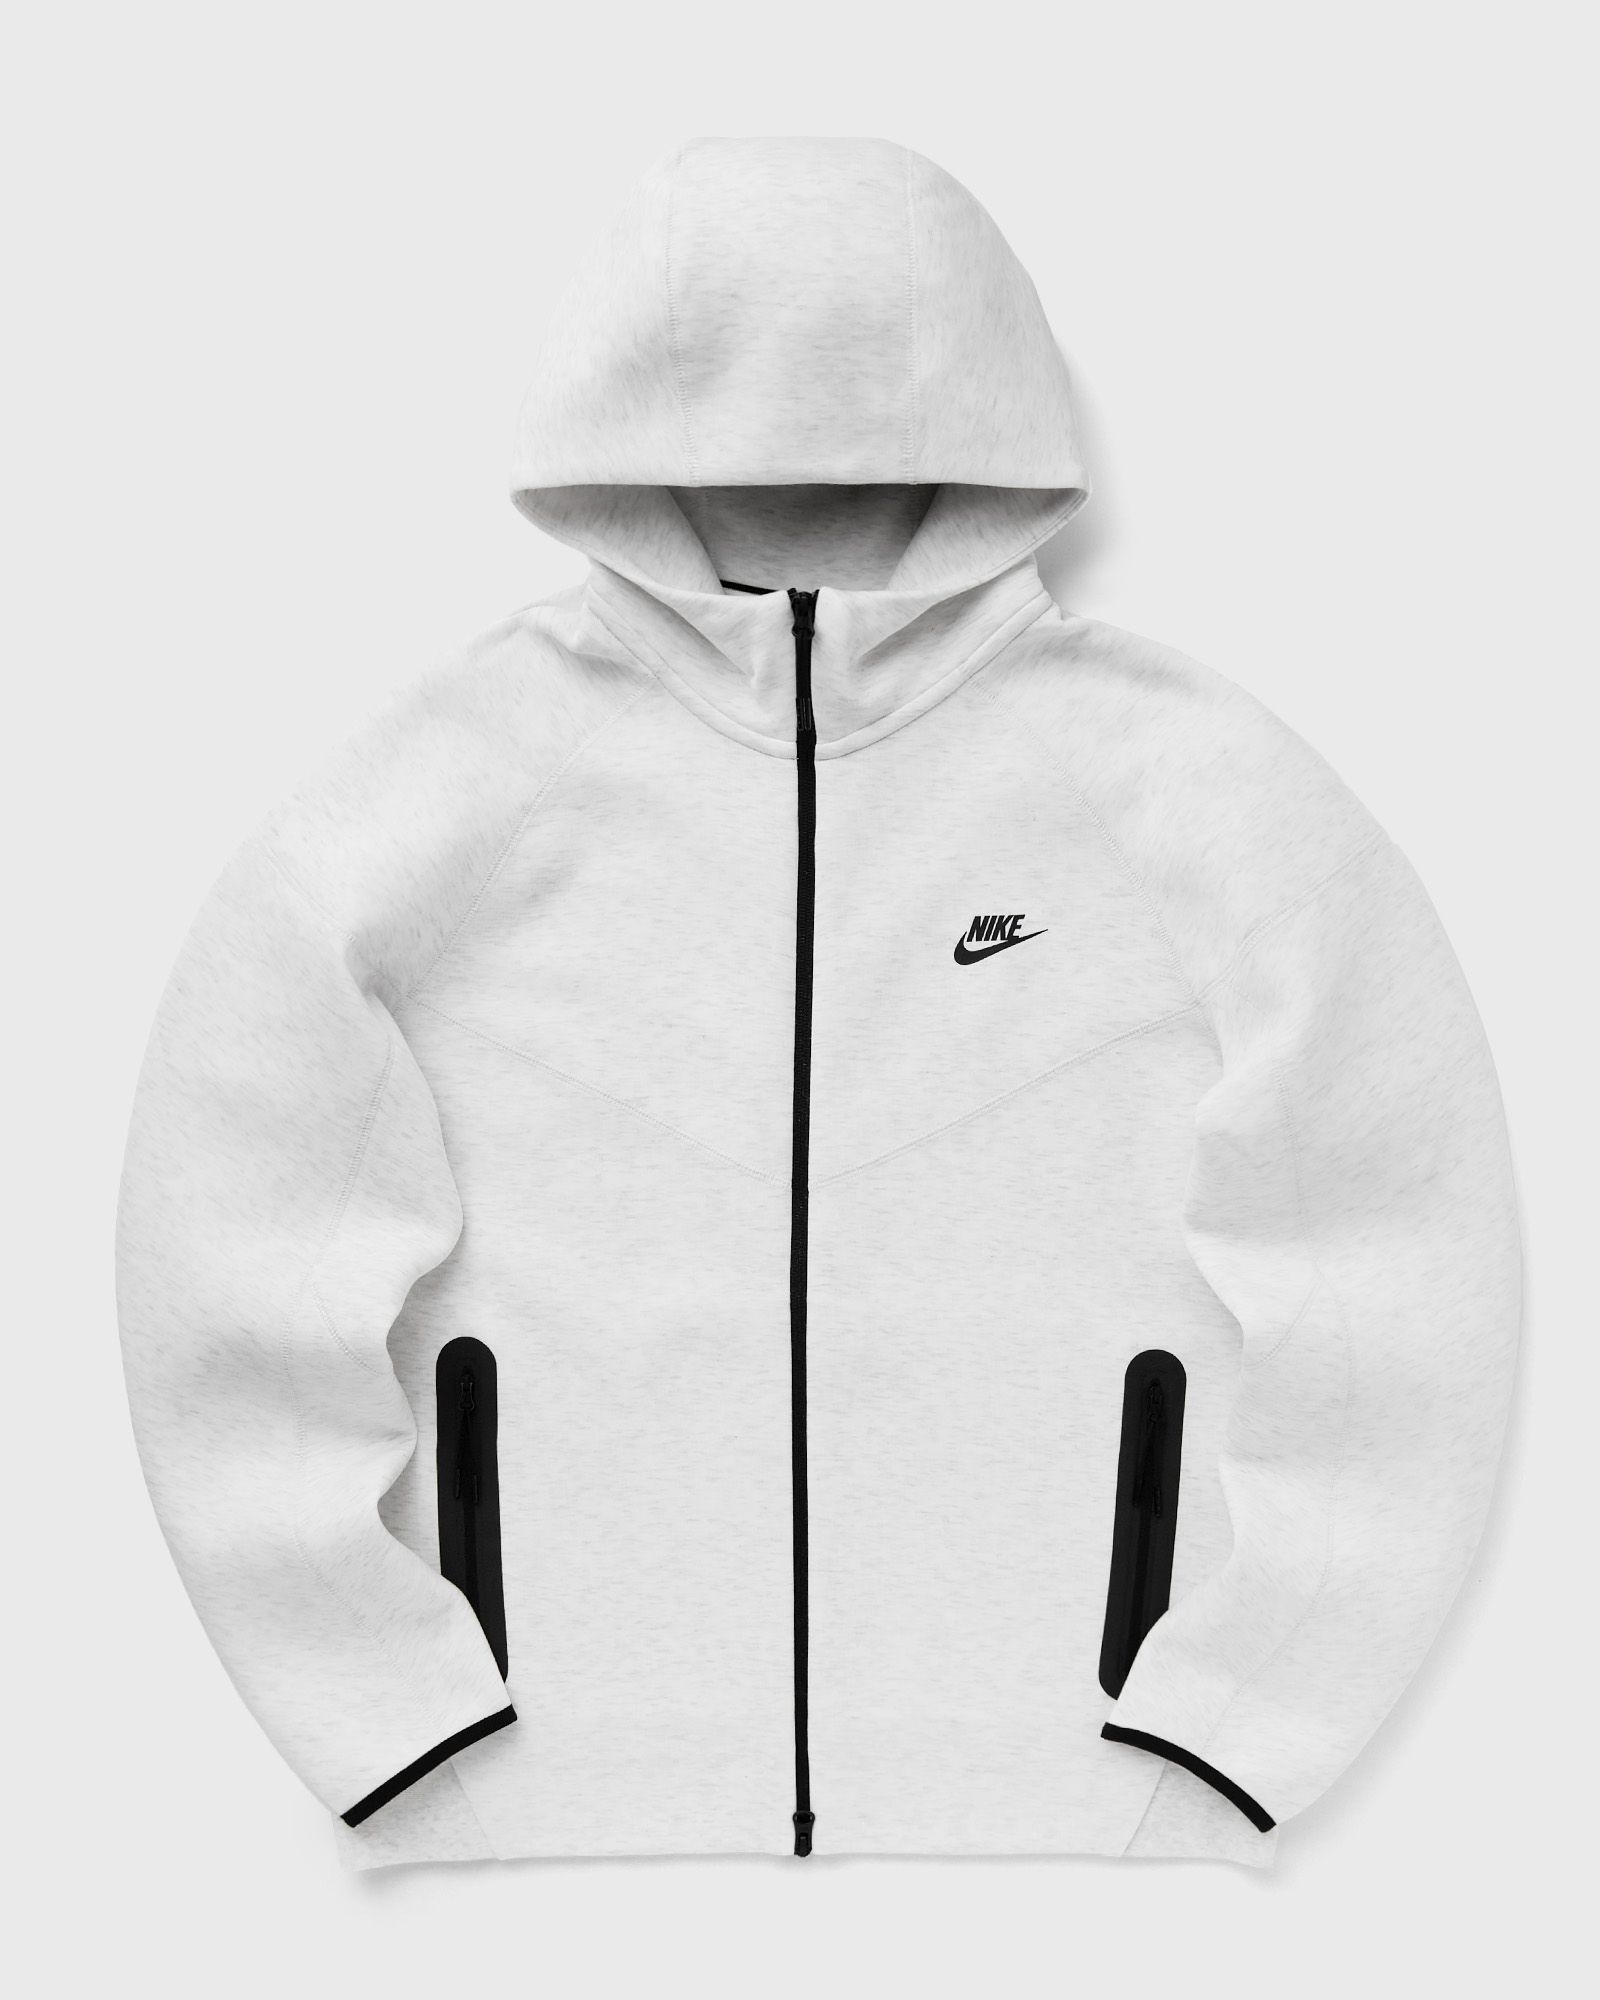 Nike - tech fleece windrunner full-zip hoodie men track jackets multi in größe:xxl